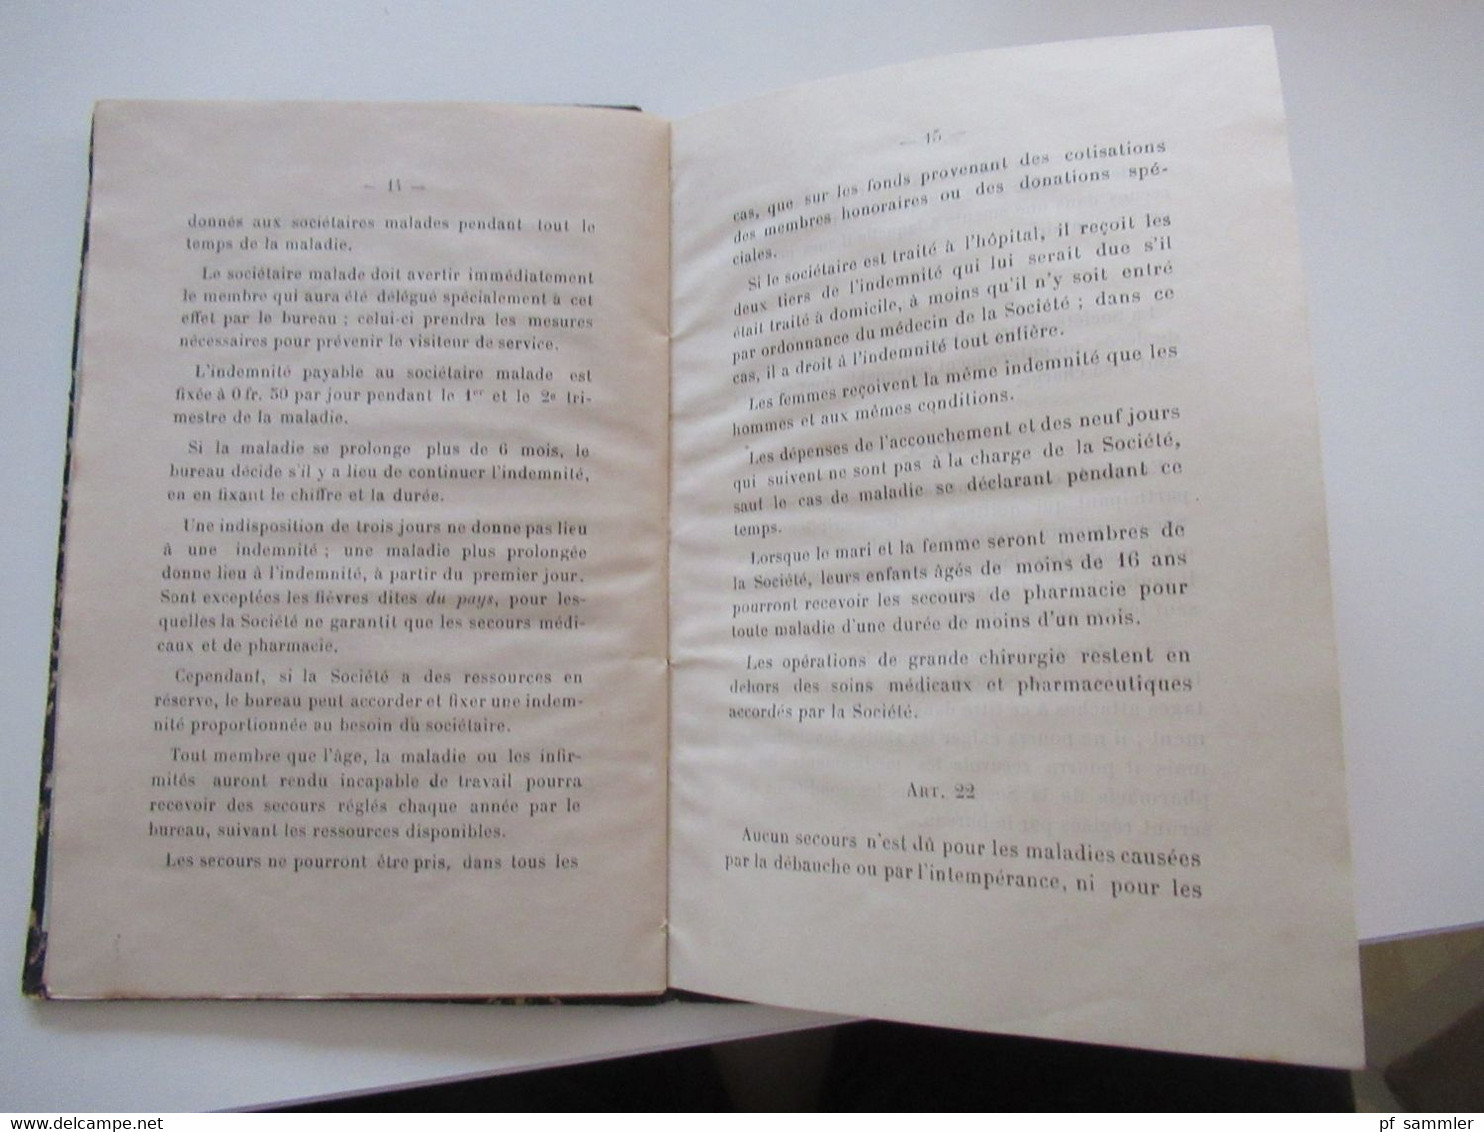 Frankreich 1909 kleines Buch Société De Secours Mutuels de La Ferté Imbault Patronage Saint Taurin Orléons